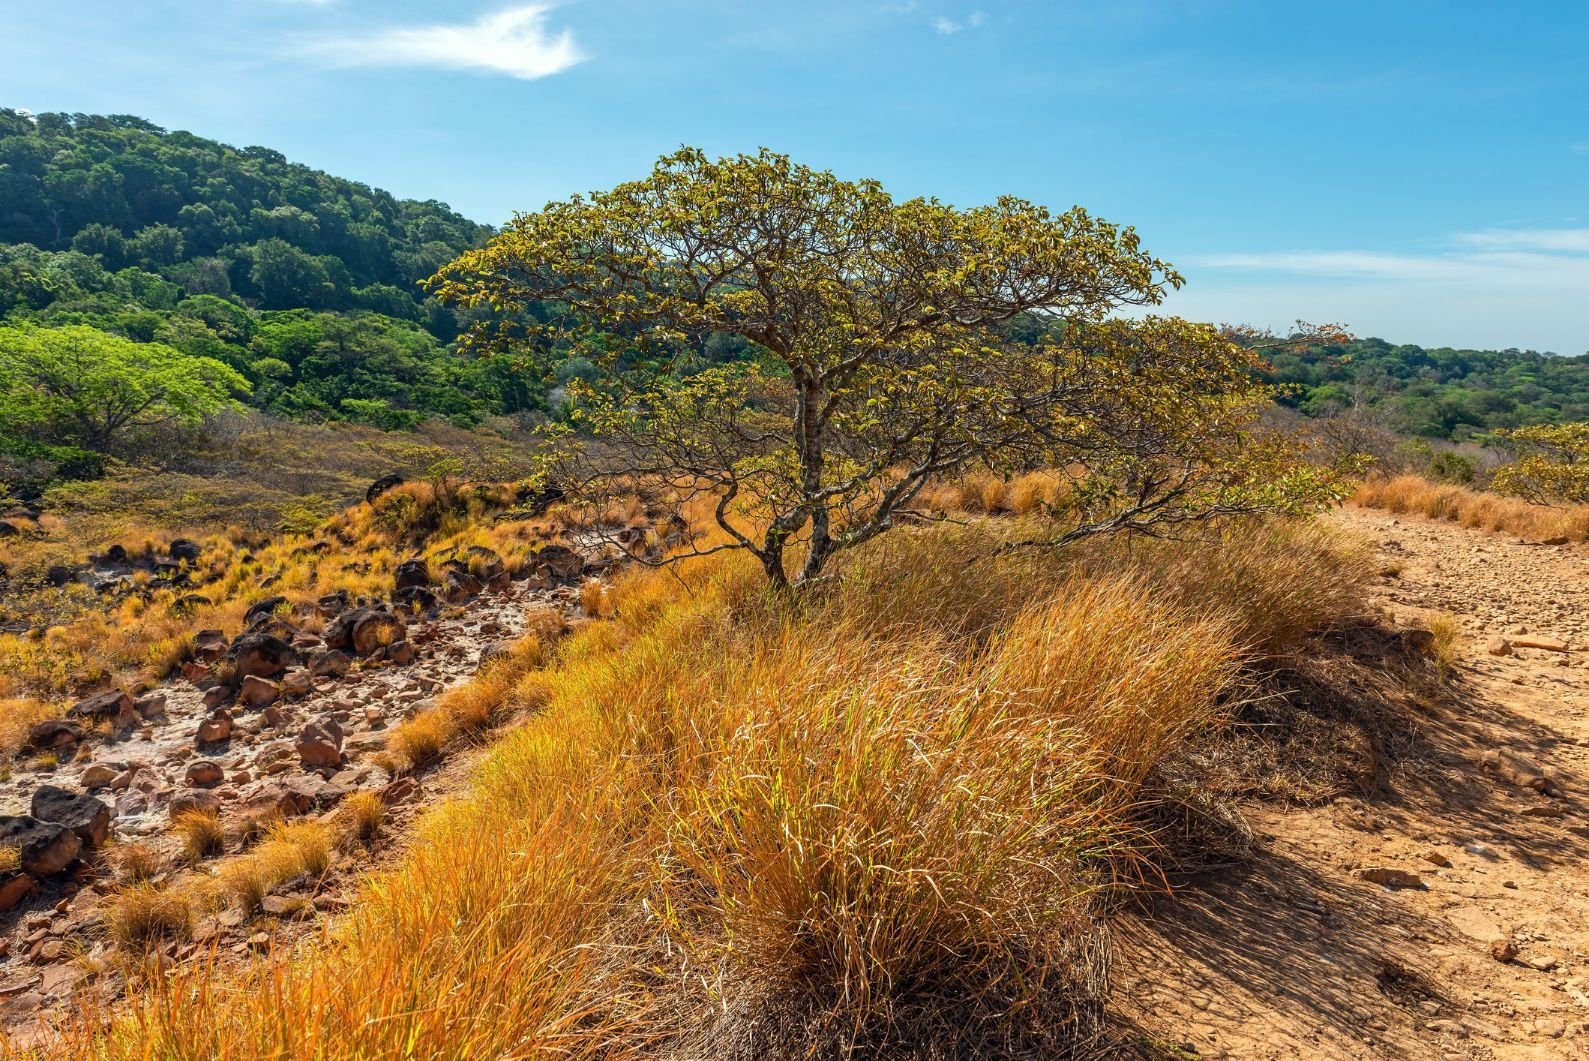 The terrain around Rincon de la Vieja can look quite different to elsewhere in Costa Rica. Photo: Getty